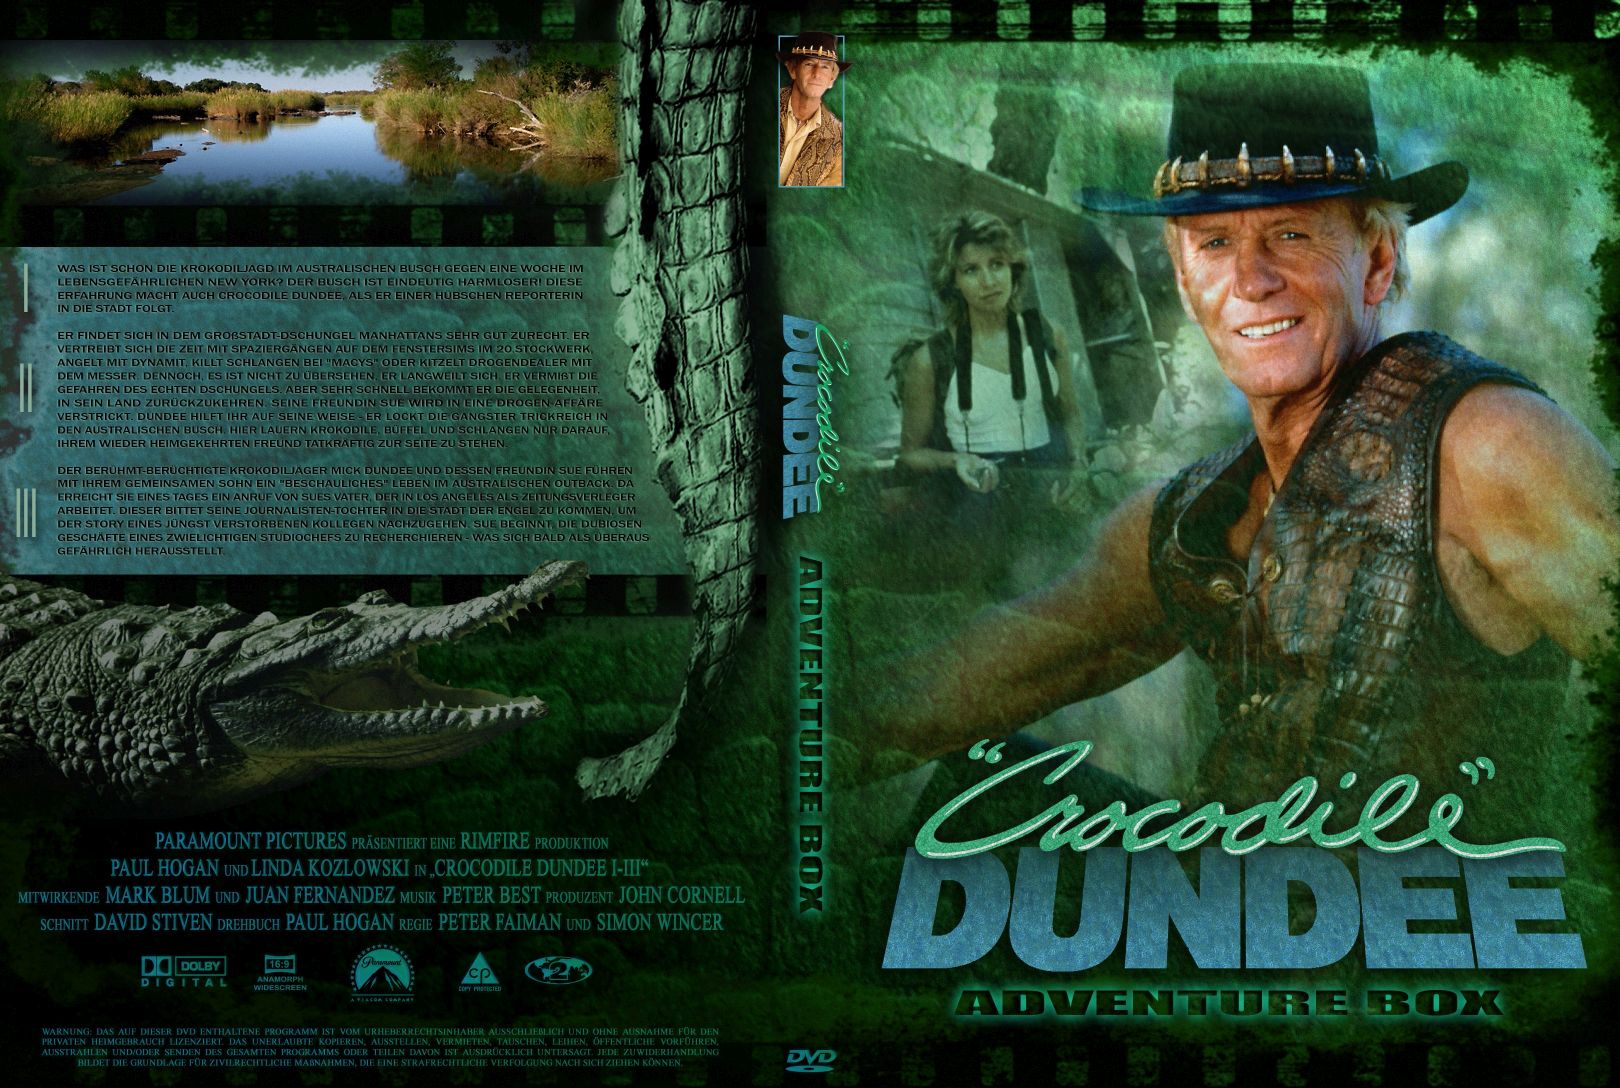 Крокодил данди 2 3. Крокодил Данди 1986 Постер. Crocodile Dundee Blu ray. Крокодил Данди (1986) DVD Cover. Крокодил Данди 2 обложка DVD диск.